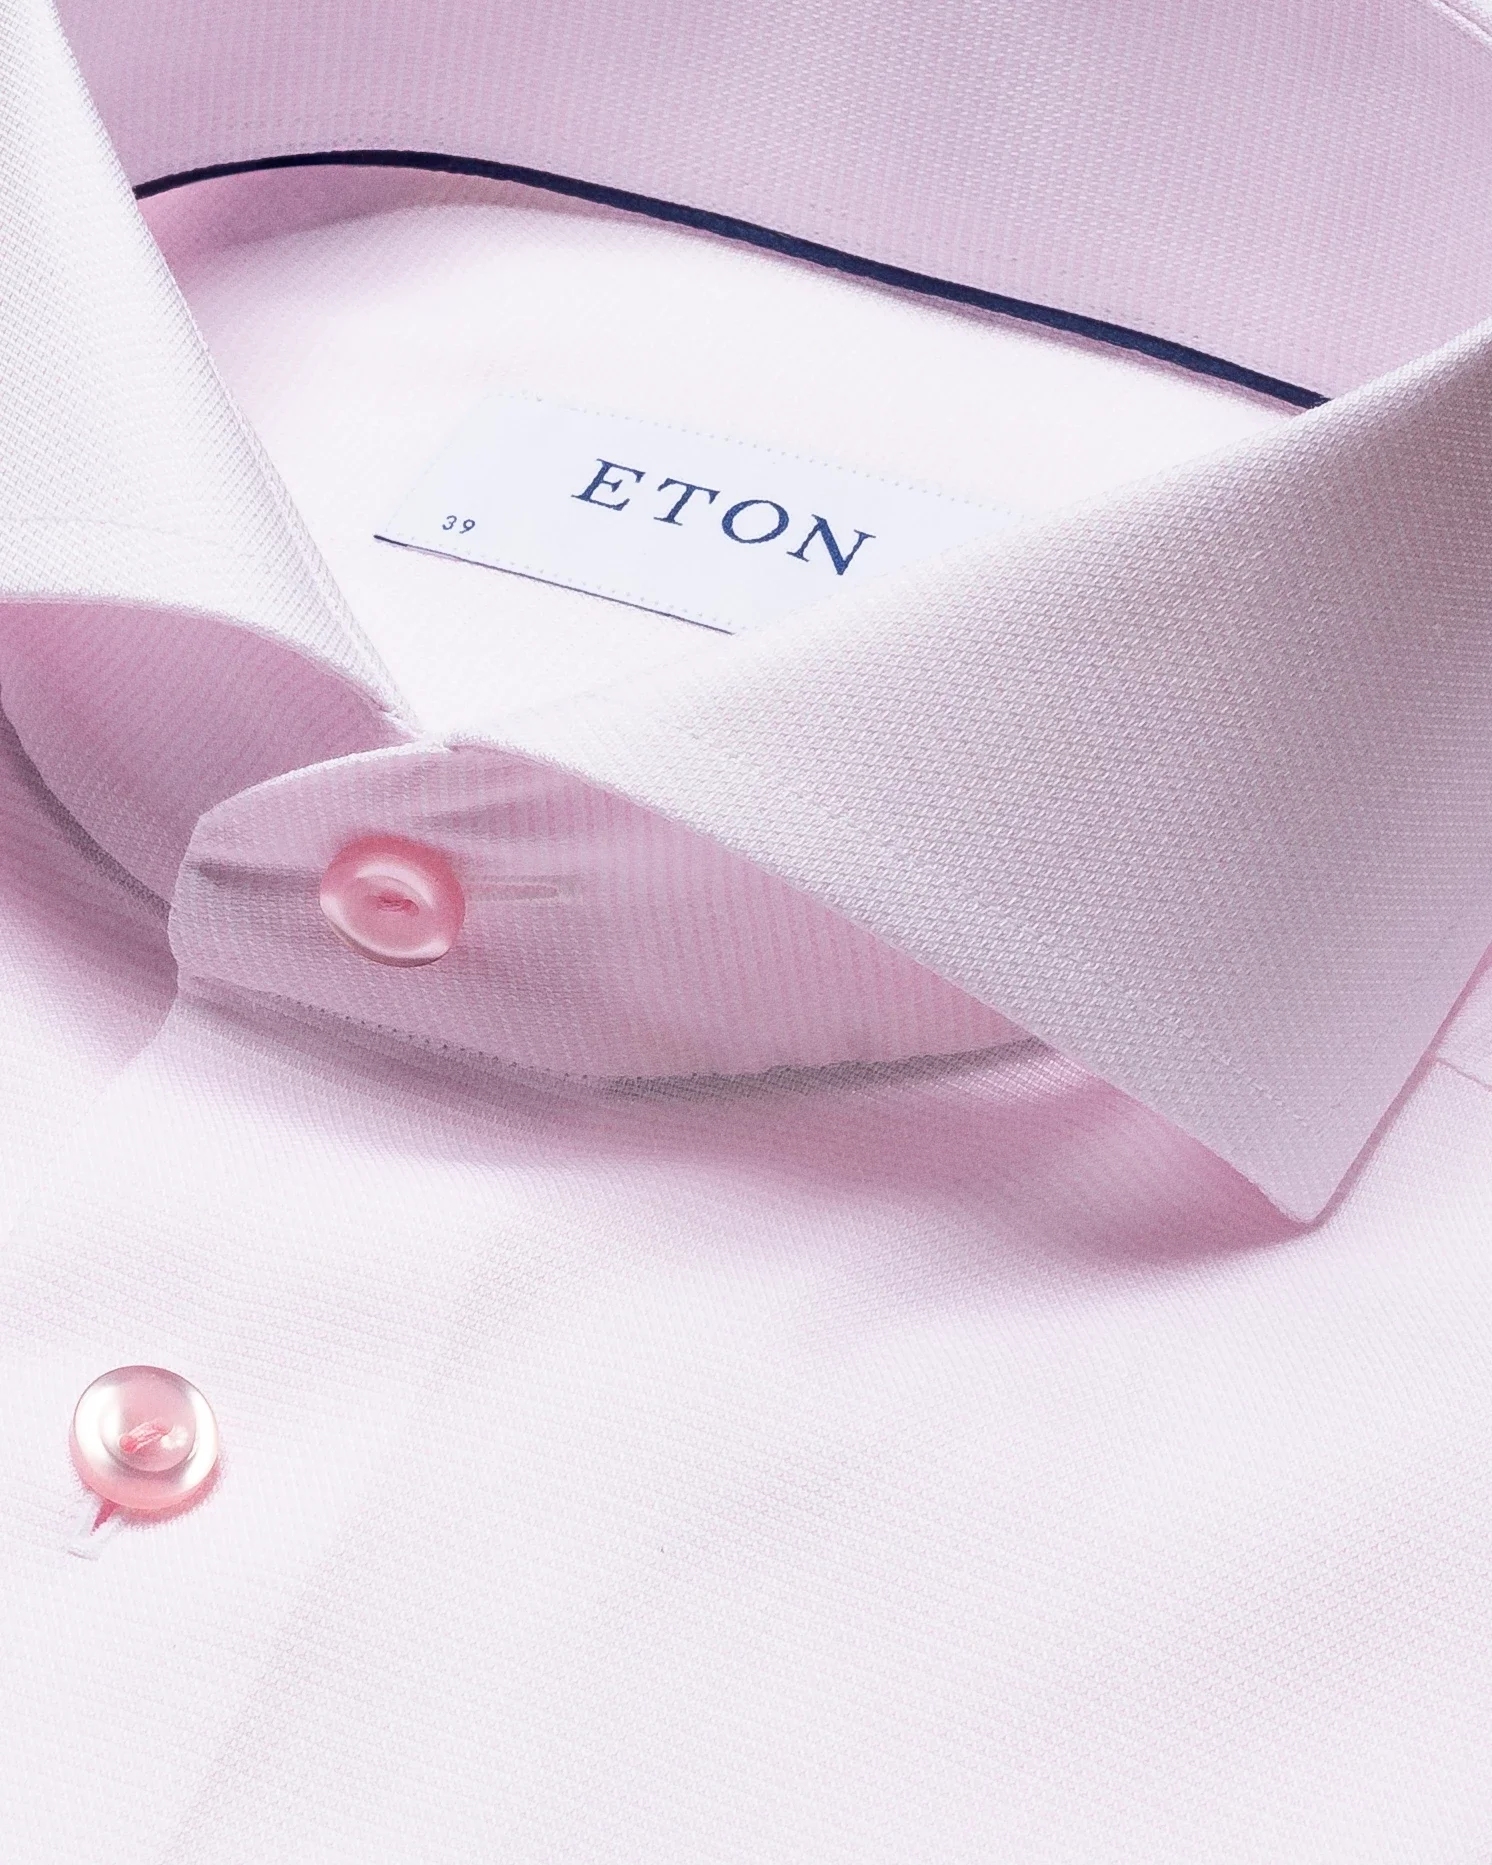 Eton - pink twill shirt extreme cut away